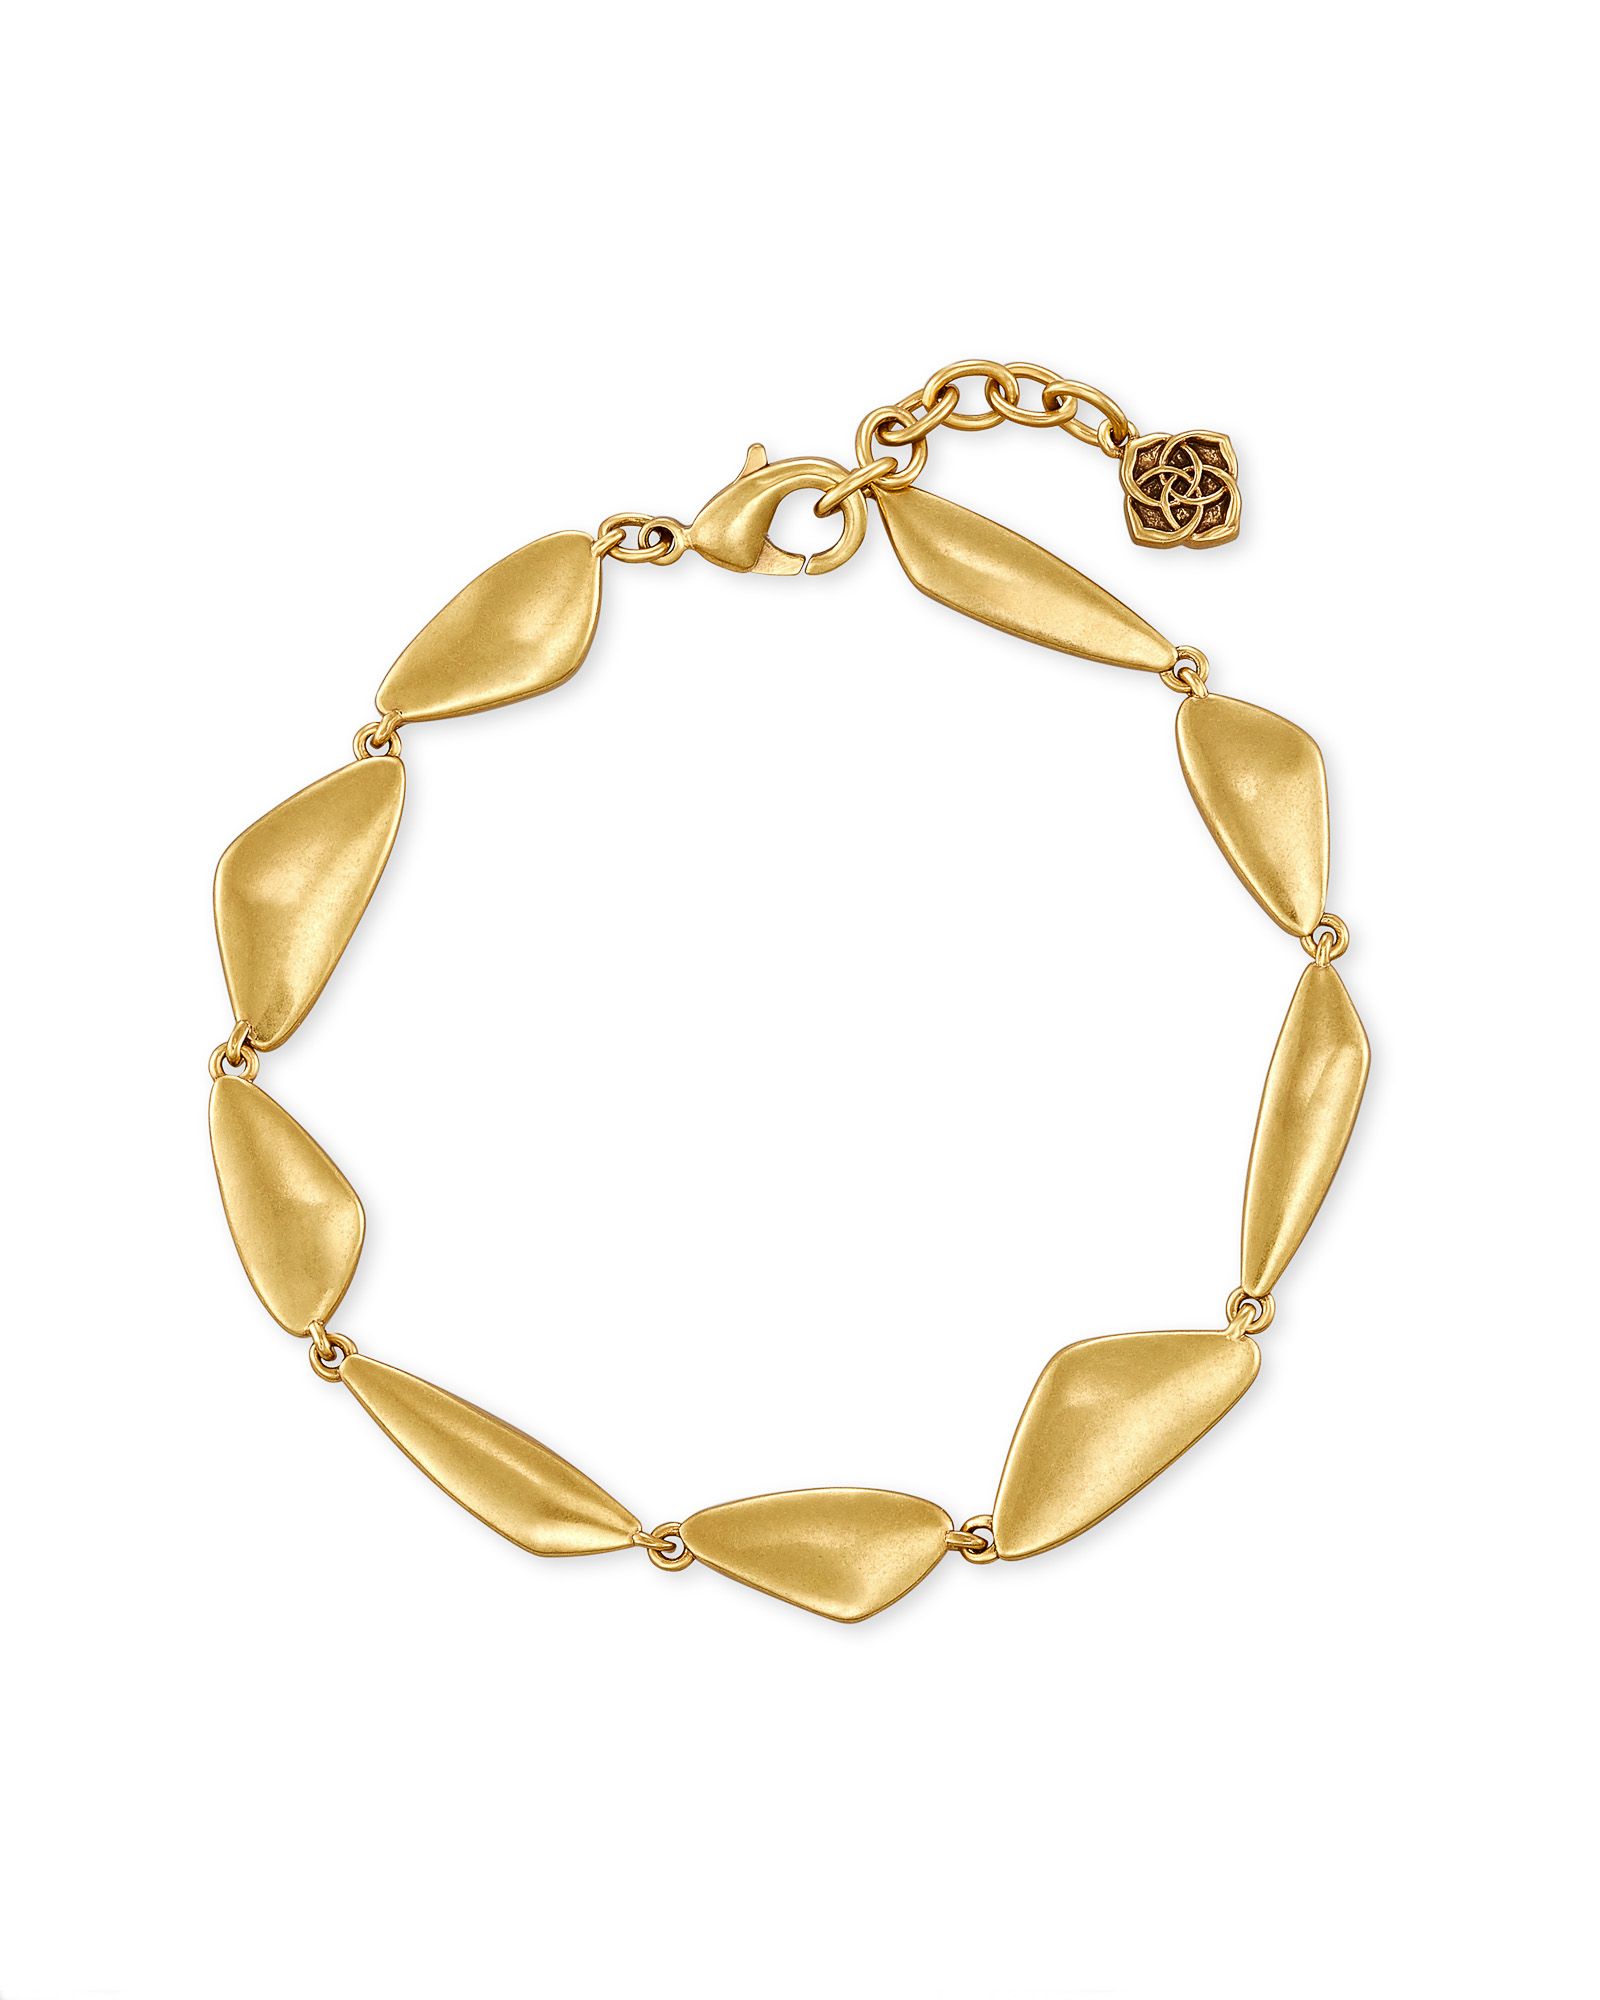 Kira Link Bracelet in Vintage Gold | Kendra Scott